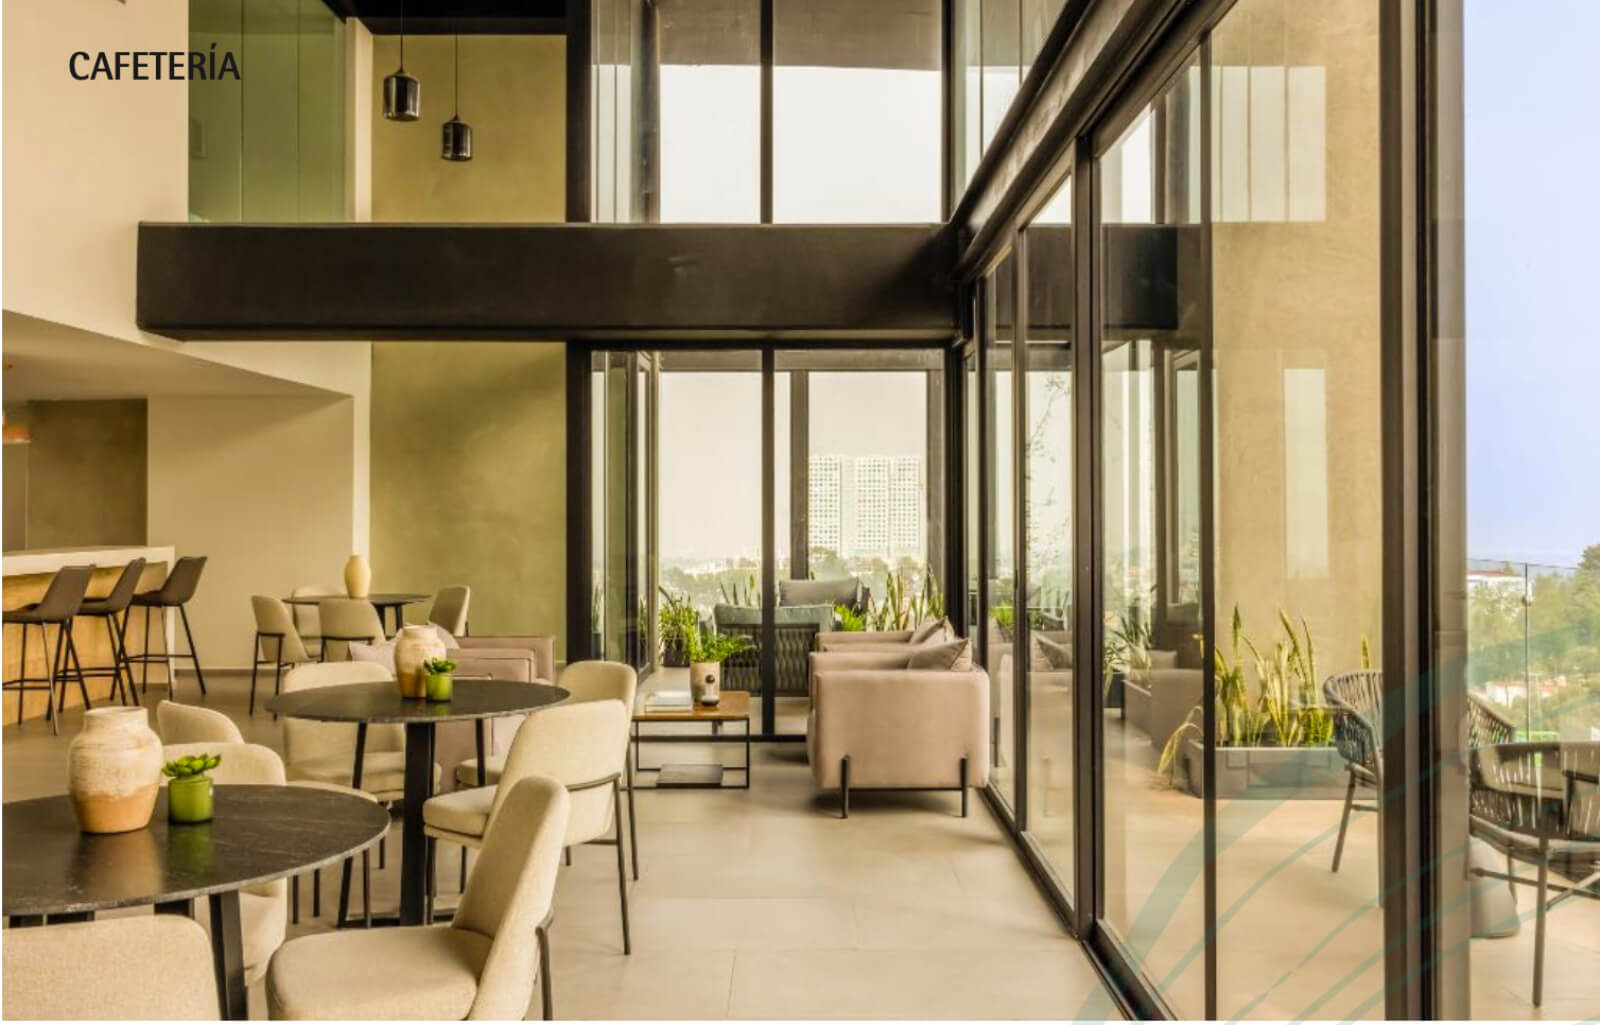 Condominio de lujo con 30 amenidades, 13,000 m2 de areas verdes, Fuentes del Pedregal, en venta Ciudad de Mexico